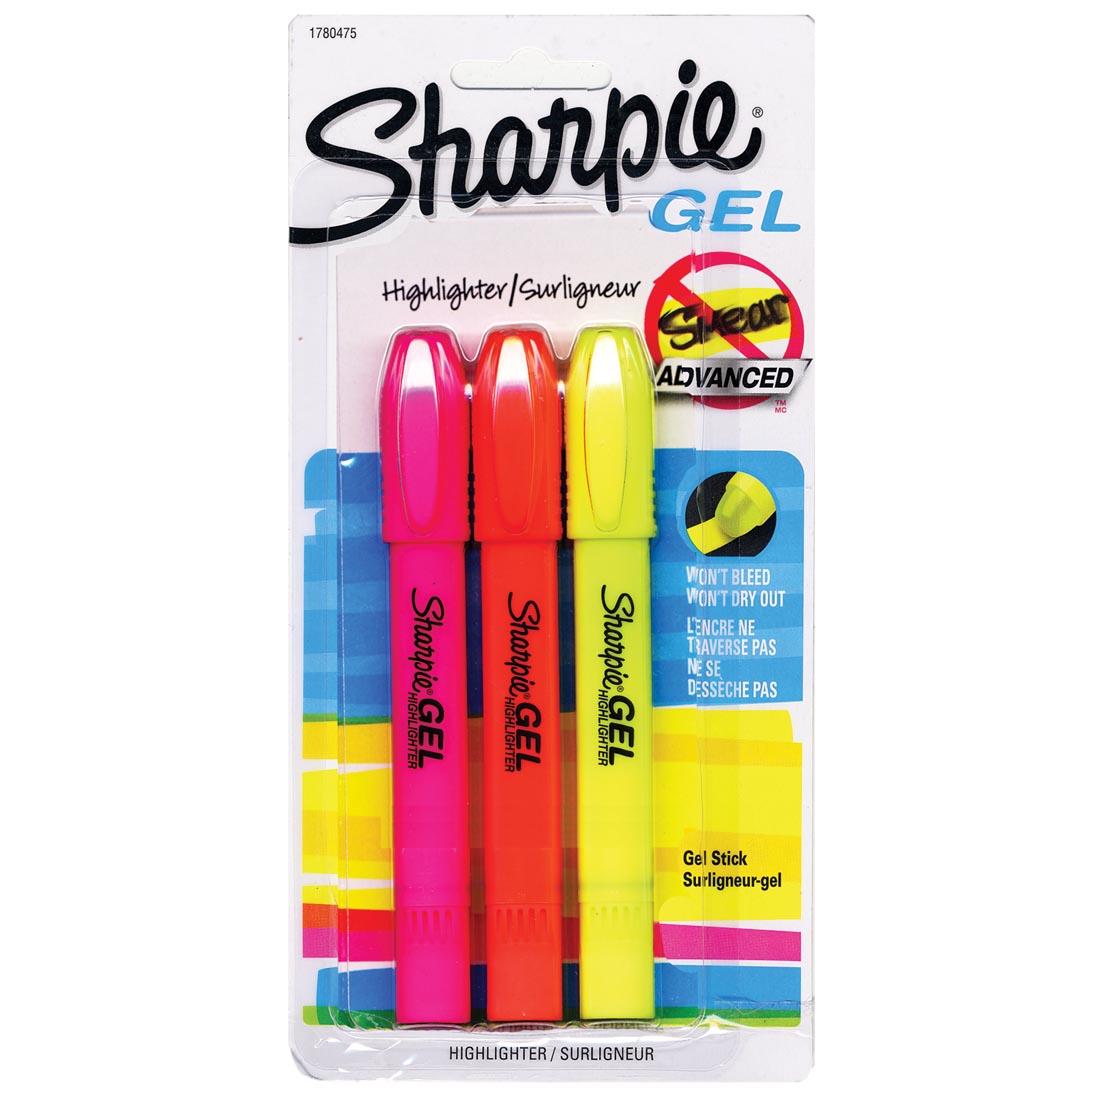 Sharpie GEL Highlighter 3-Color Set